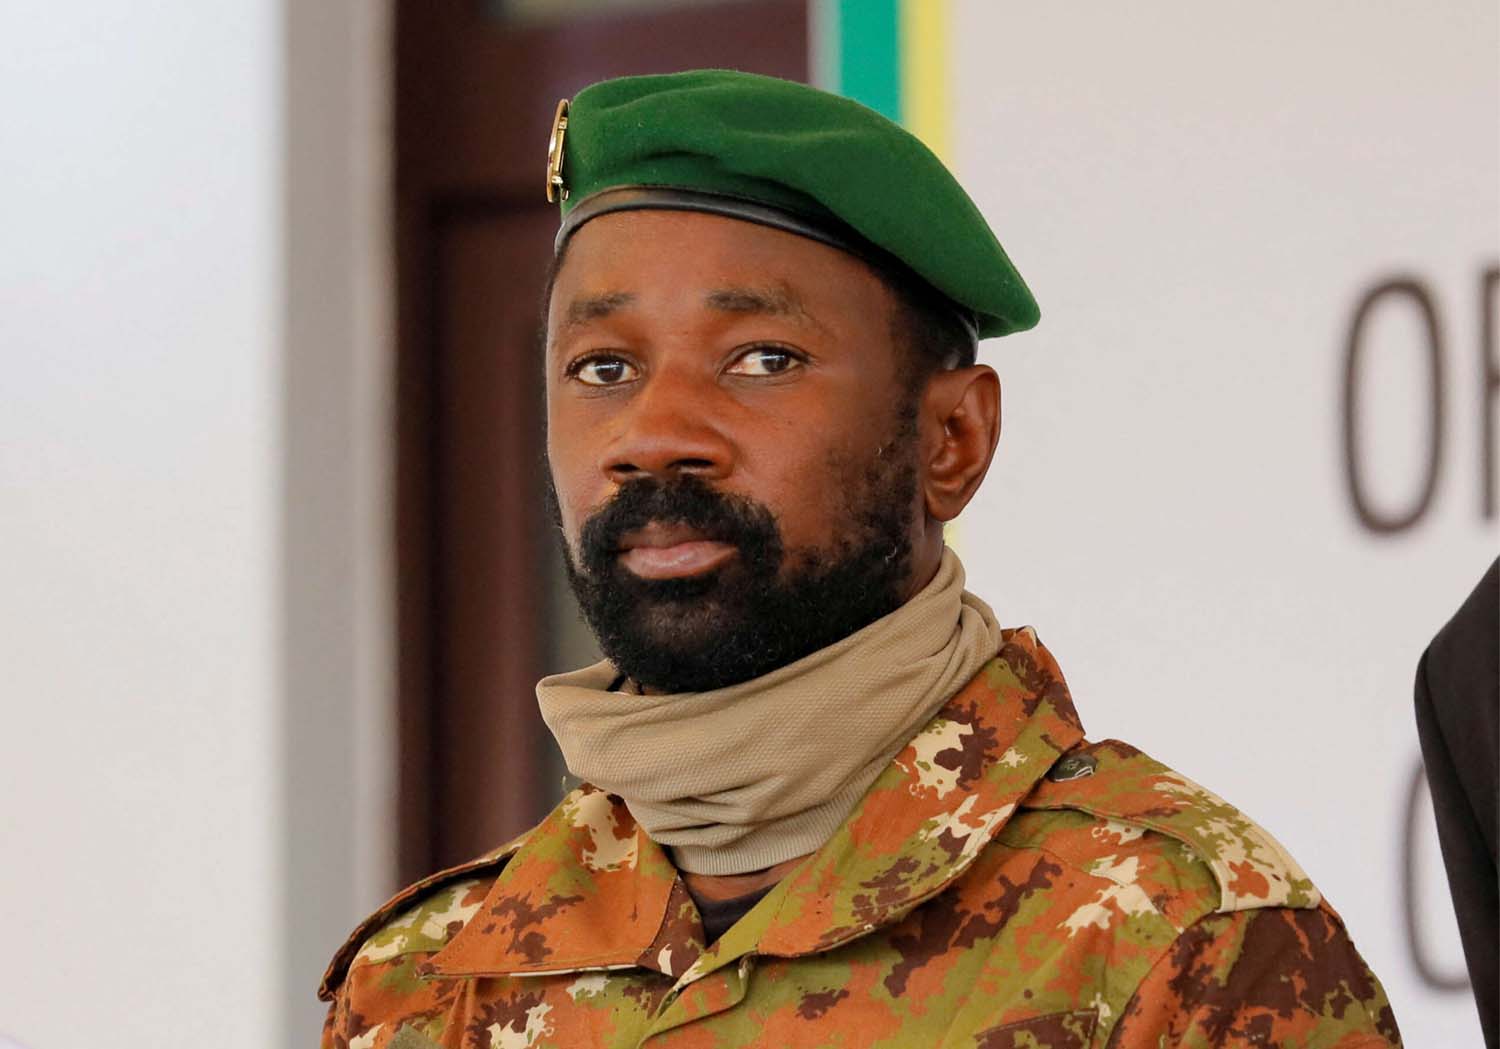 Colonel Assimi Goita, leader of Malian military junta